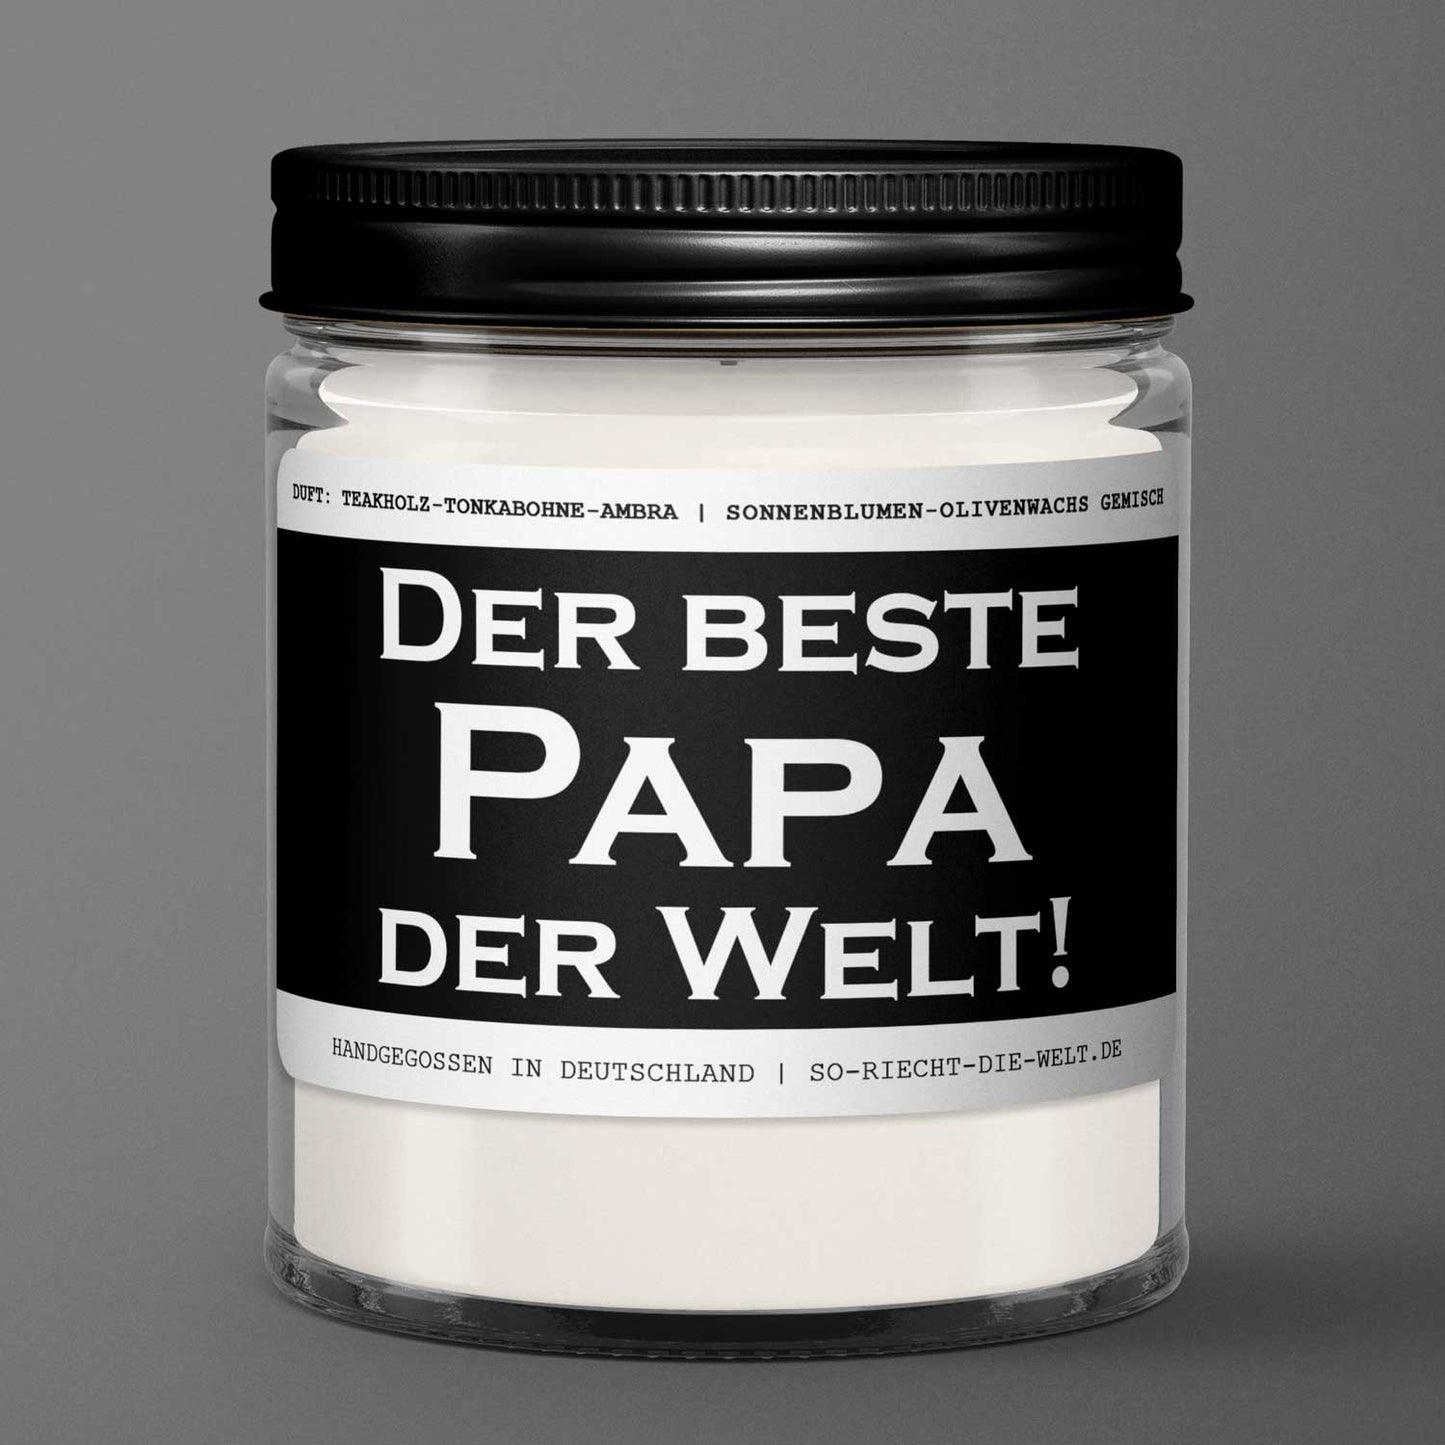 Papa Kerze "Der beste Papa der Welt!" Duft: Teakholz-Tonkabohne-Ambra